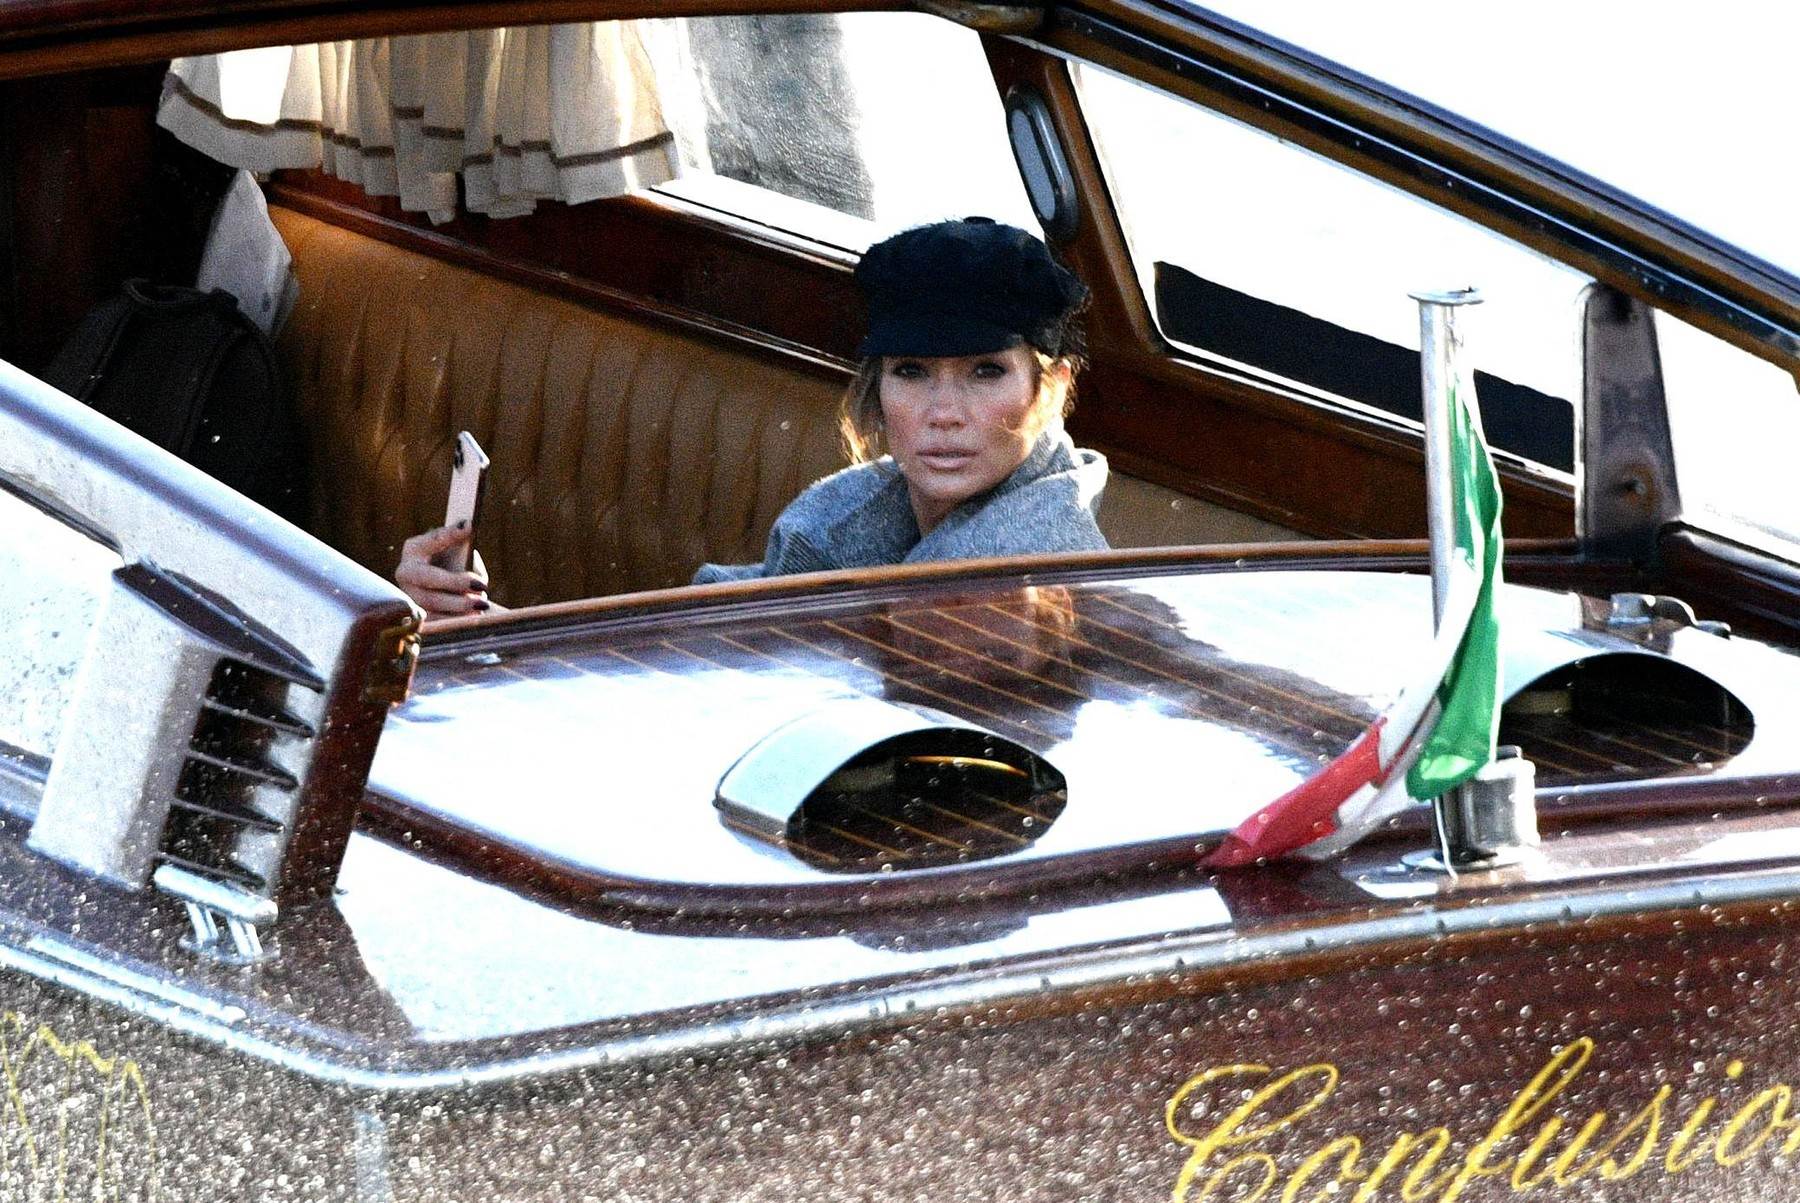 Jennifer Lopez u Veneciji